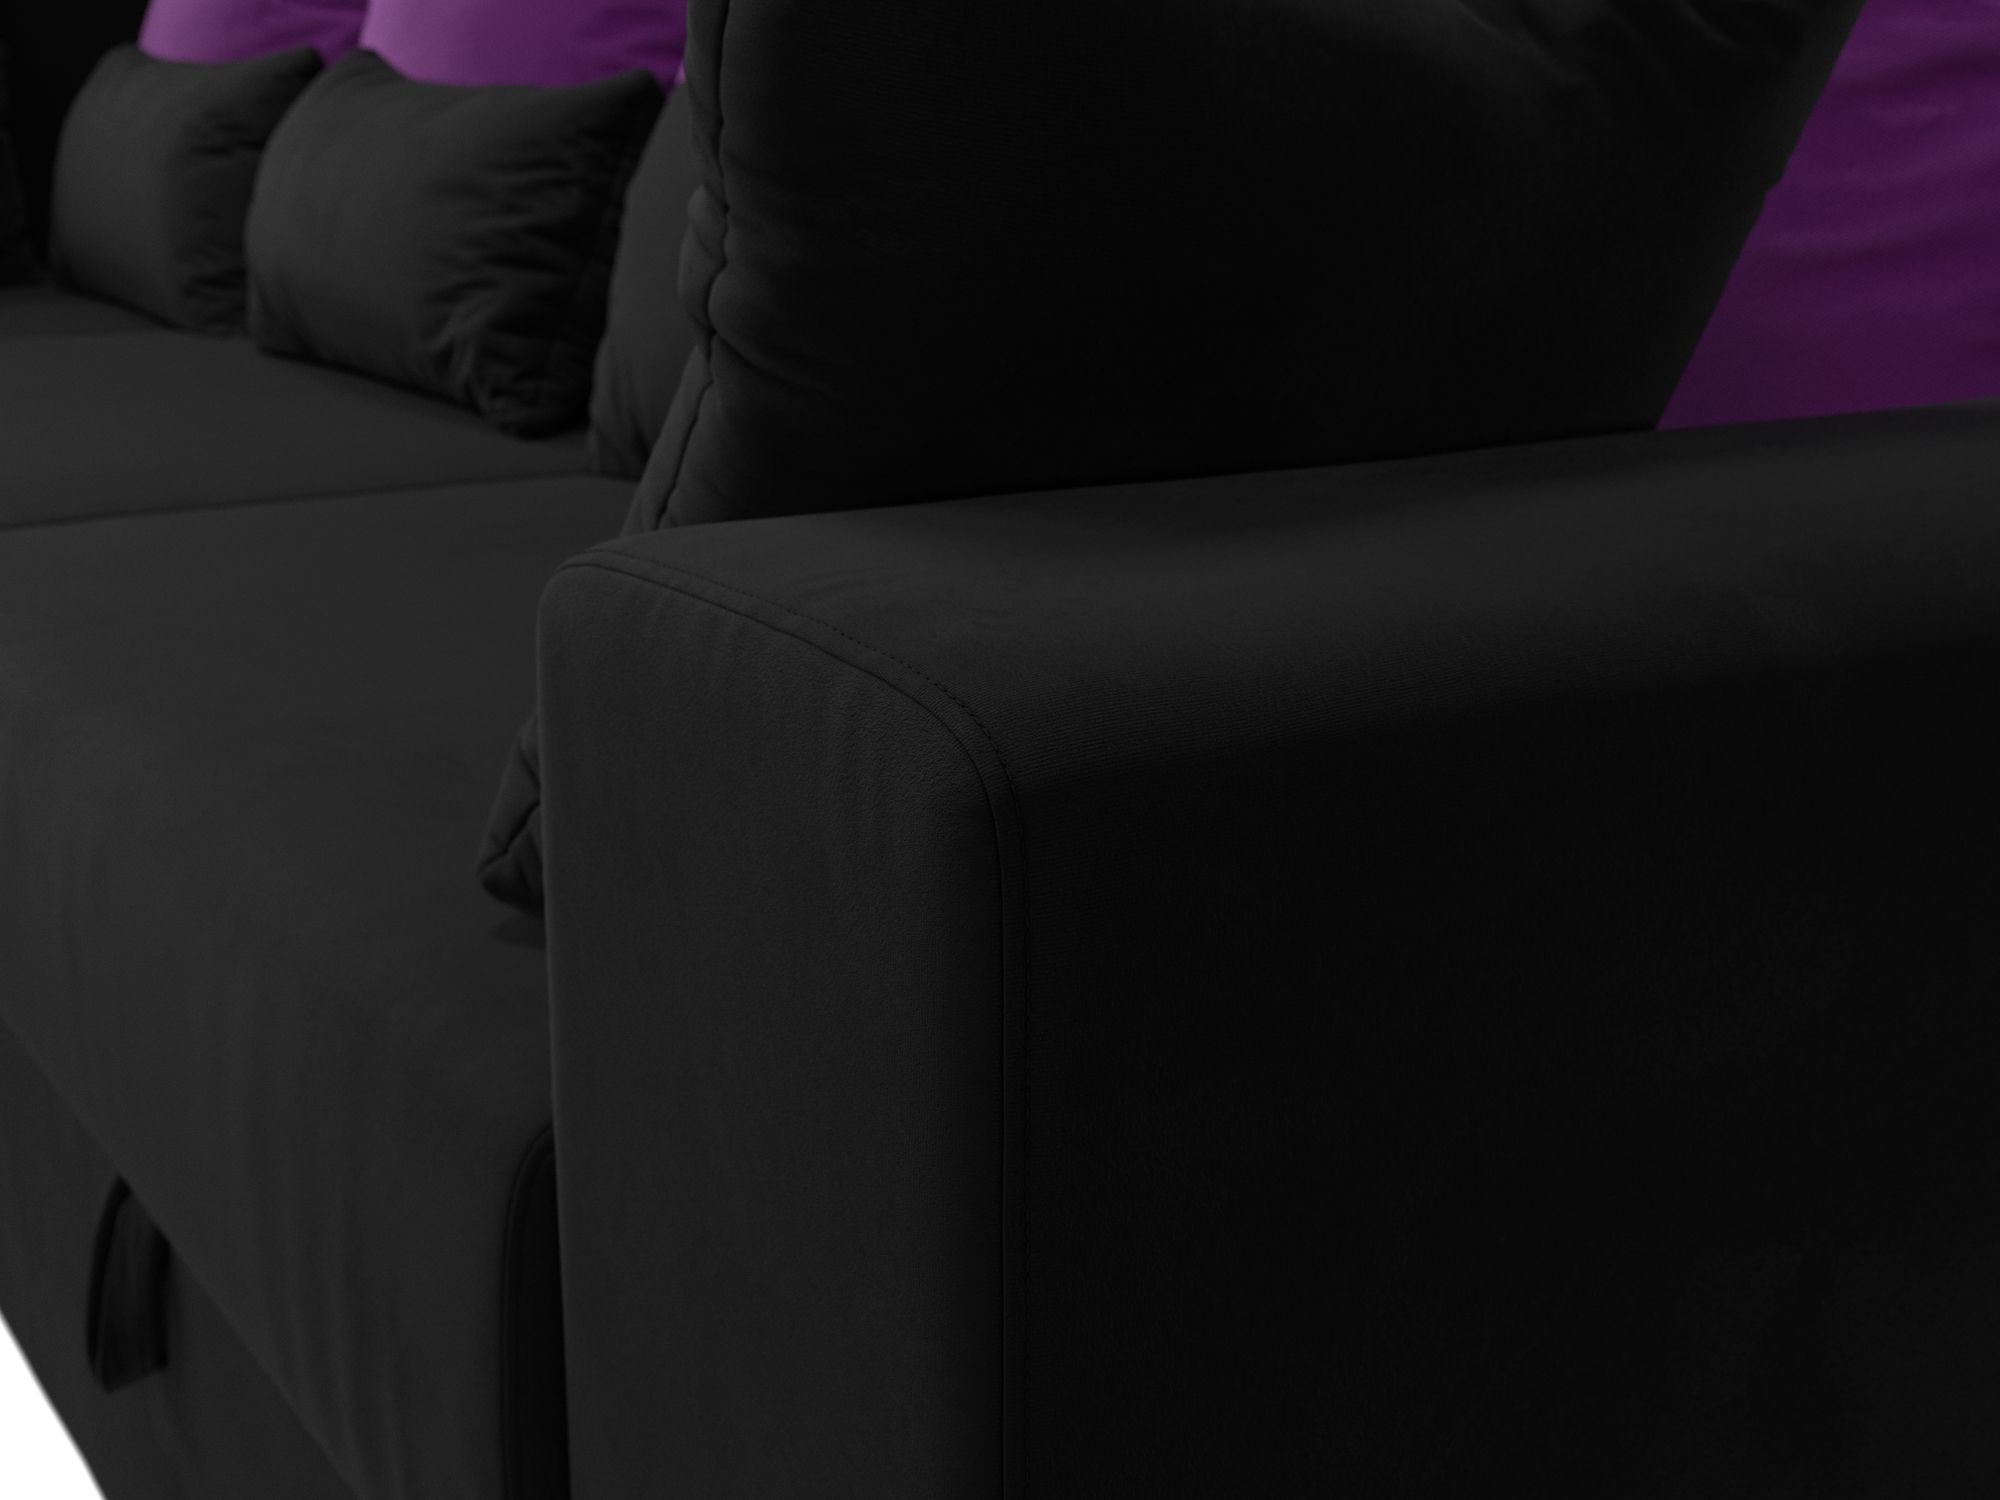 Угловой диван Майами Long левый угол (Черный\Фиолетовый\Черный)